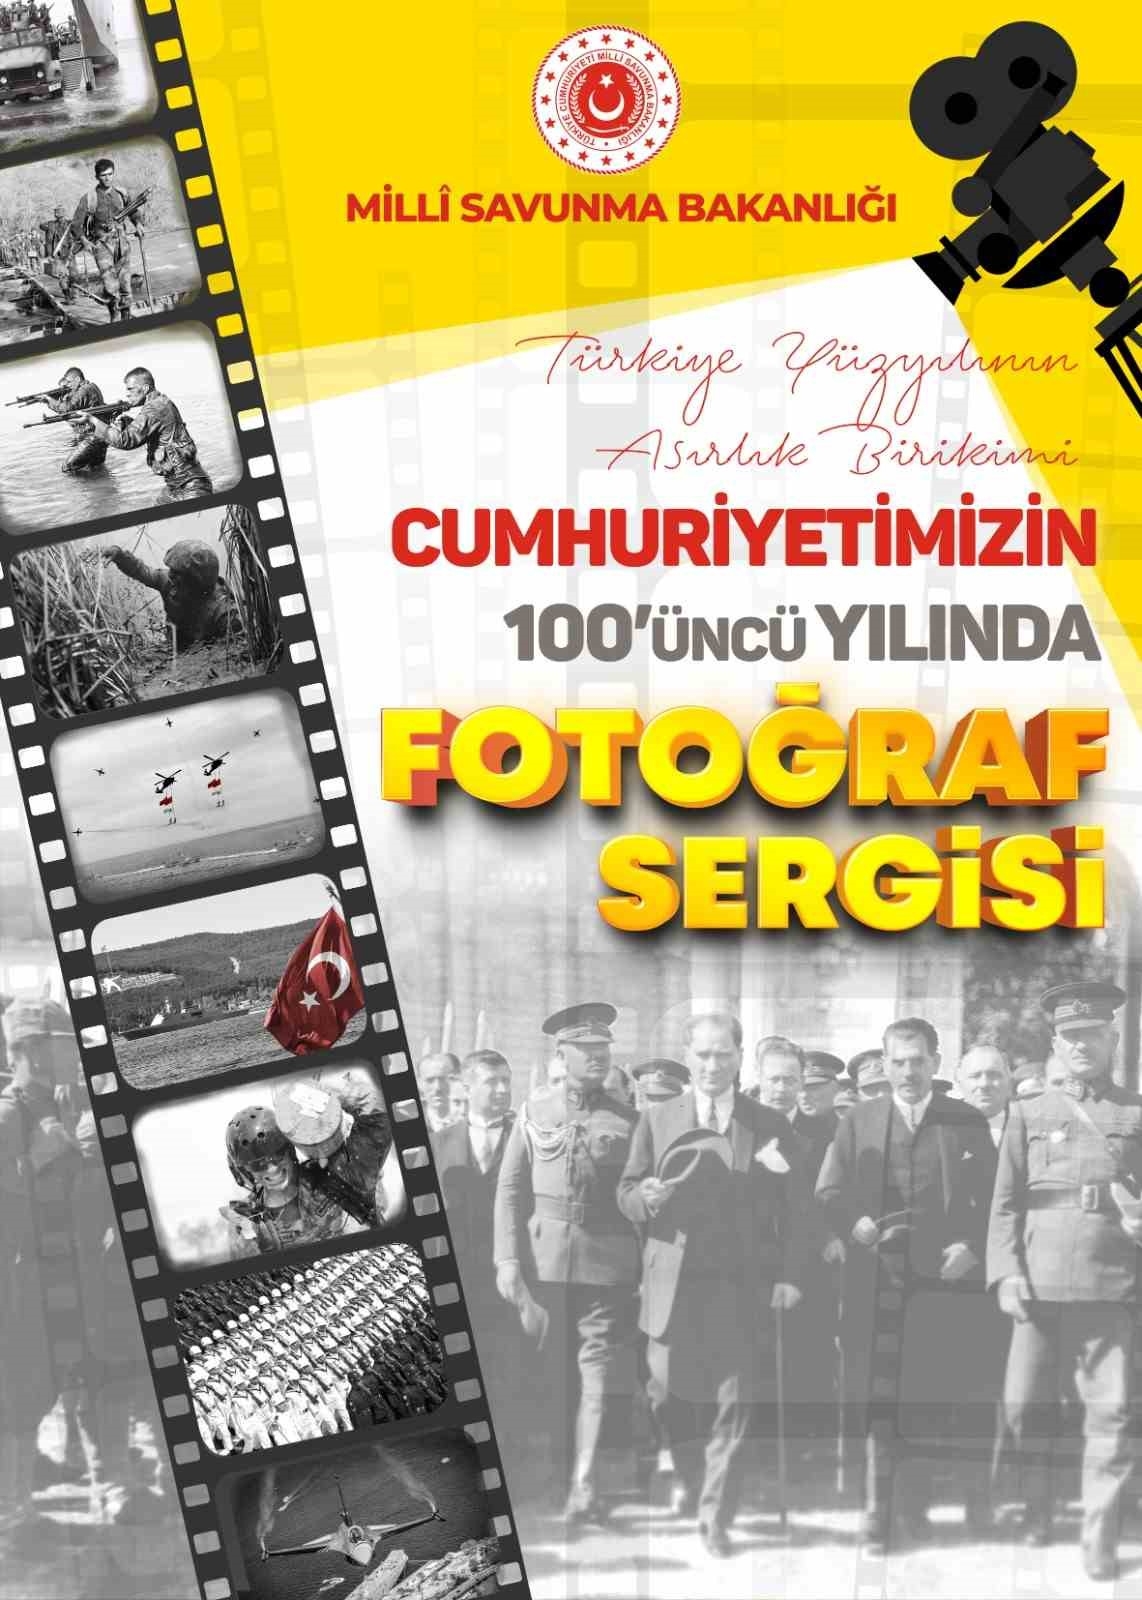 MSB’den Cumhuriyet’in 100’üncü yılına özel fotoğraf sergisi
